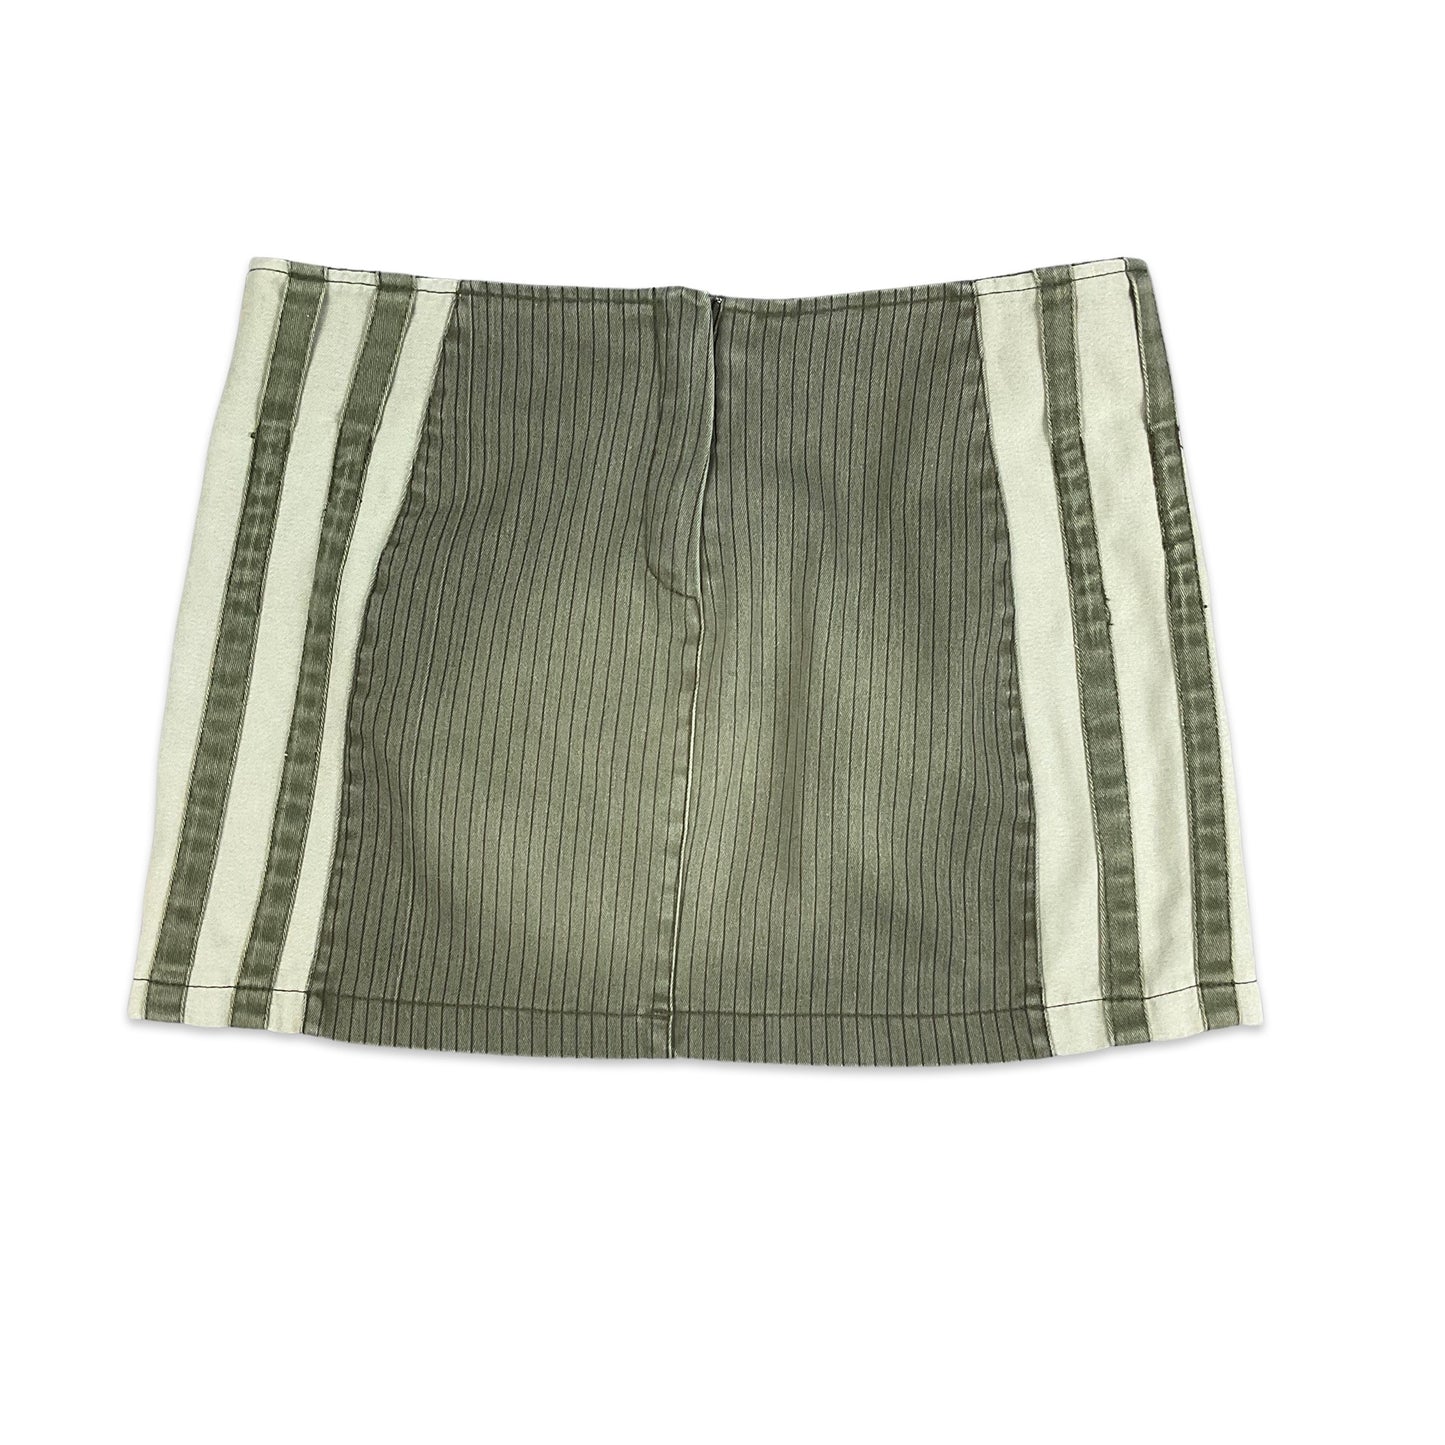 Vintage 90s Khaki Green Denim Striped Mini Skirt 10 12